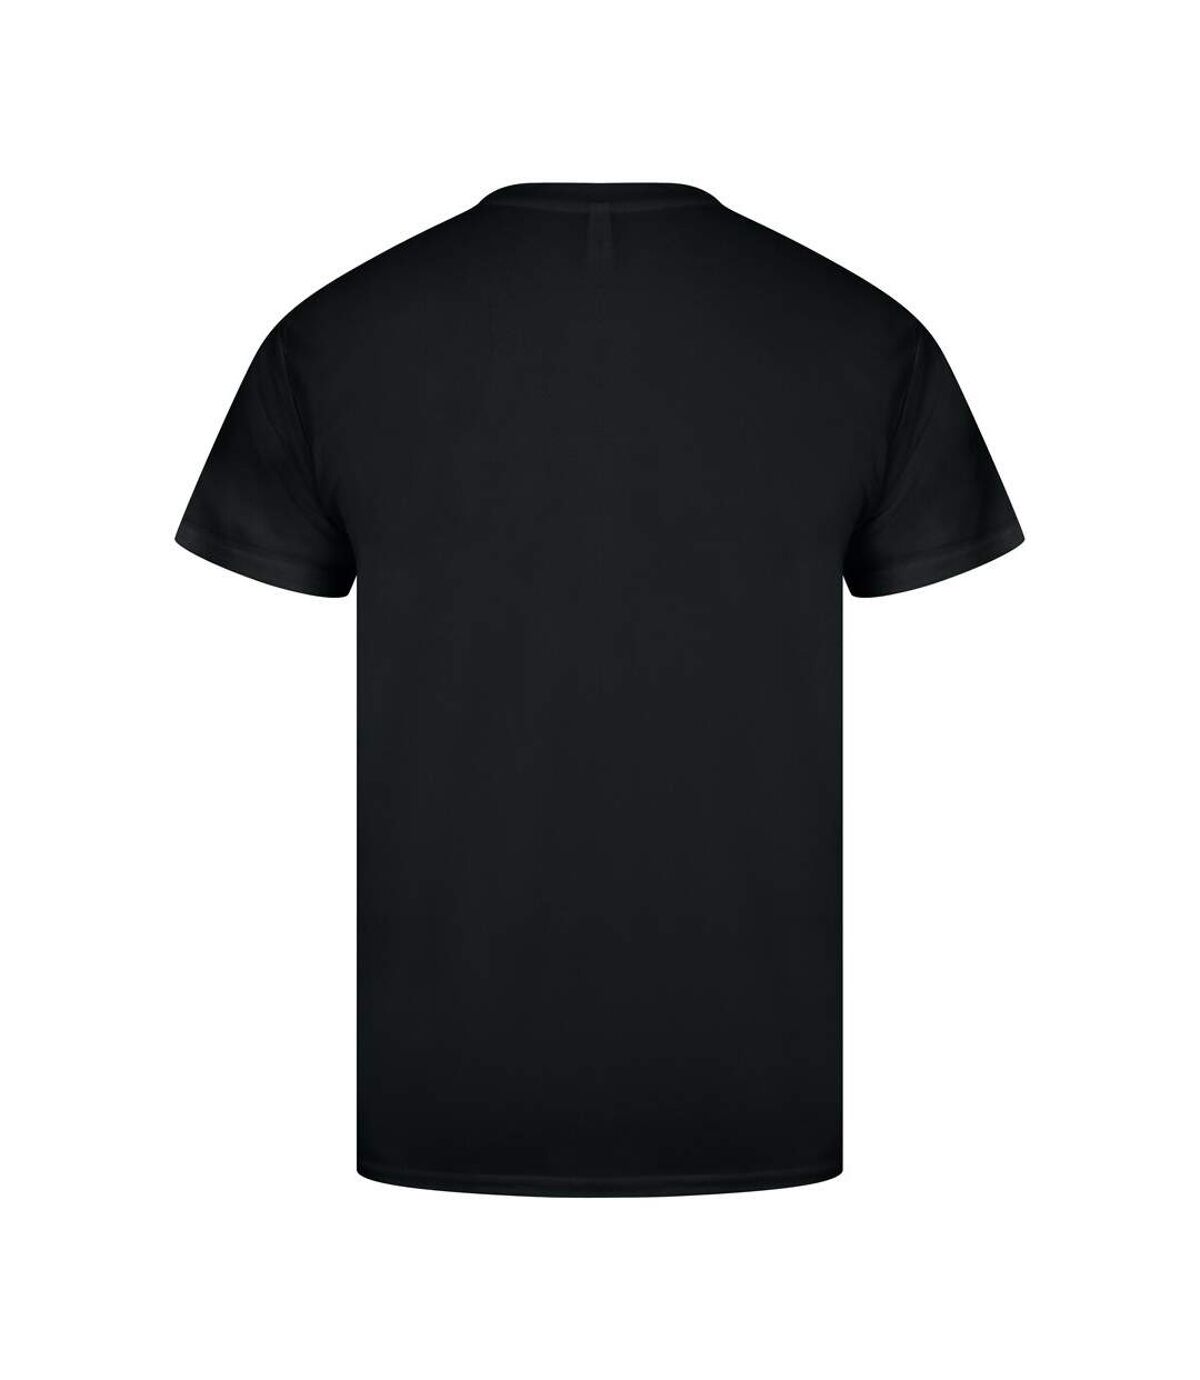 Casual Classics Mens Original Tech T-Shirt (Black)